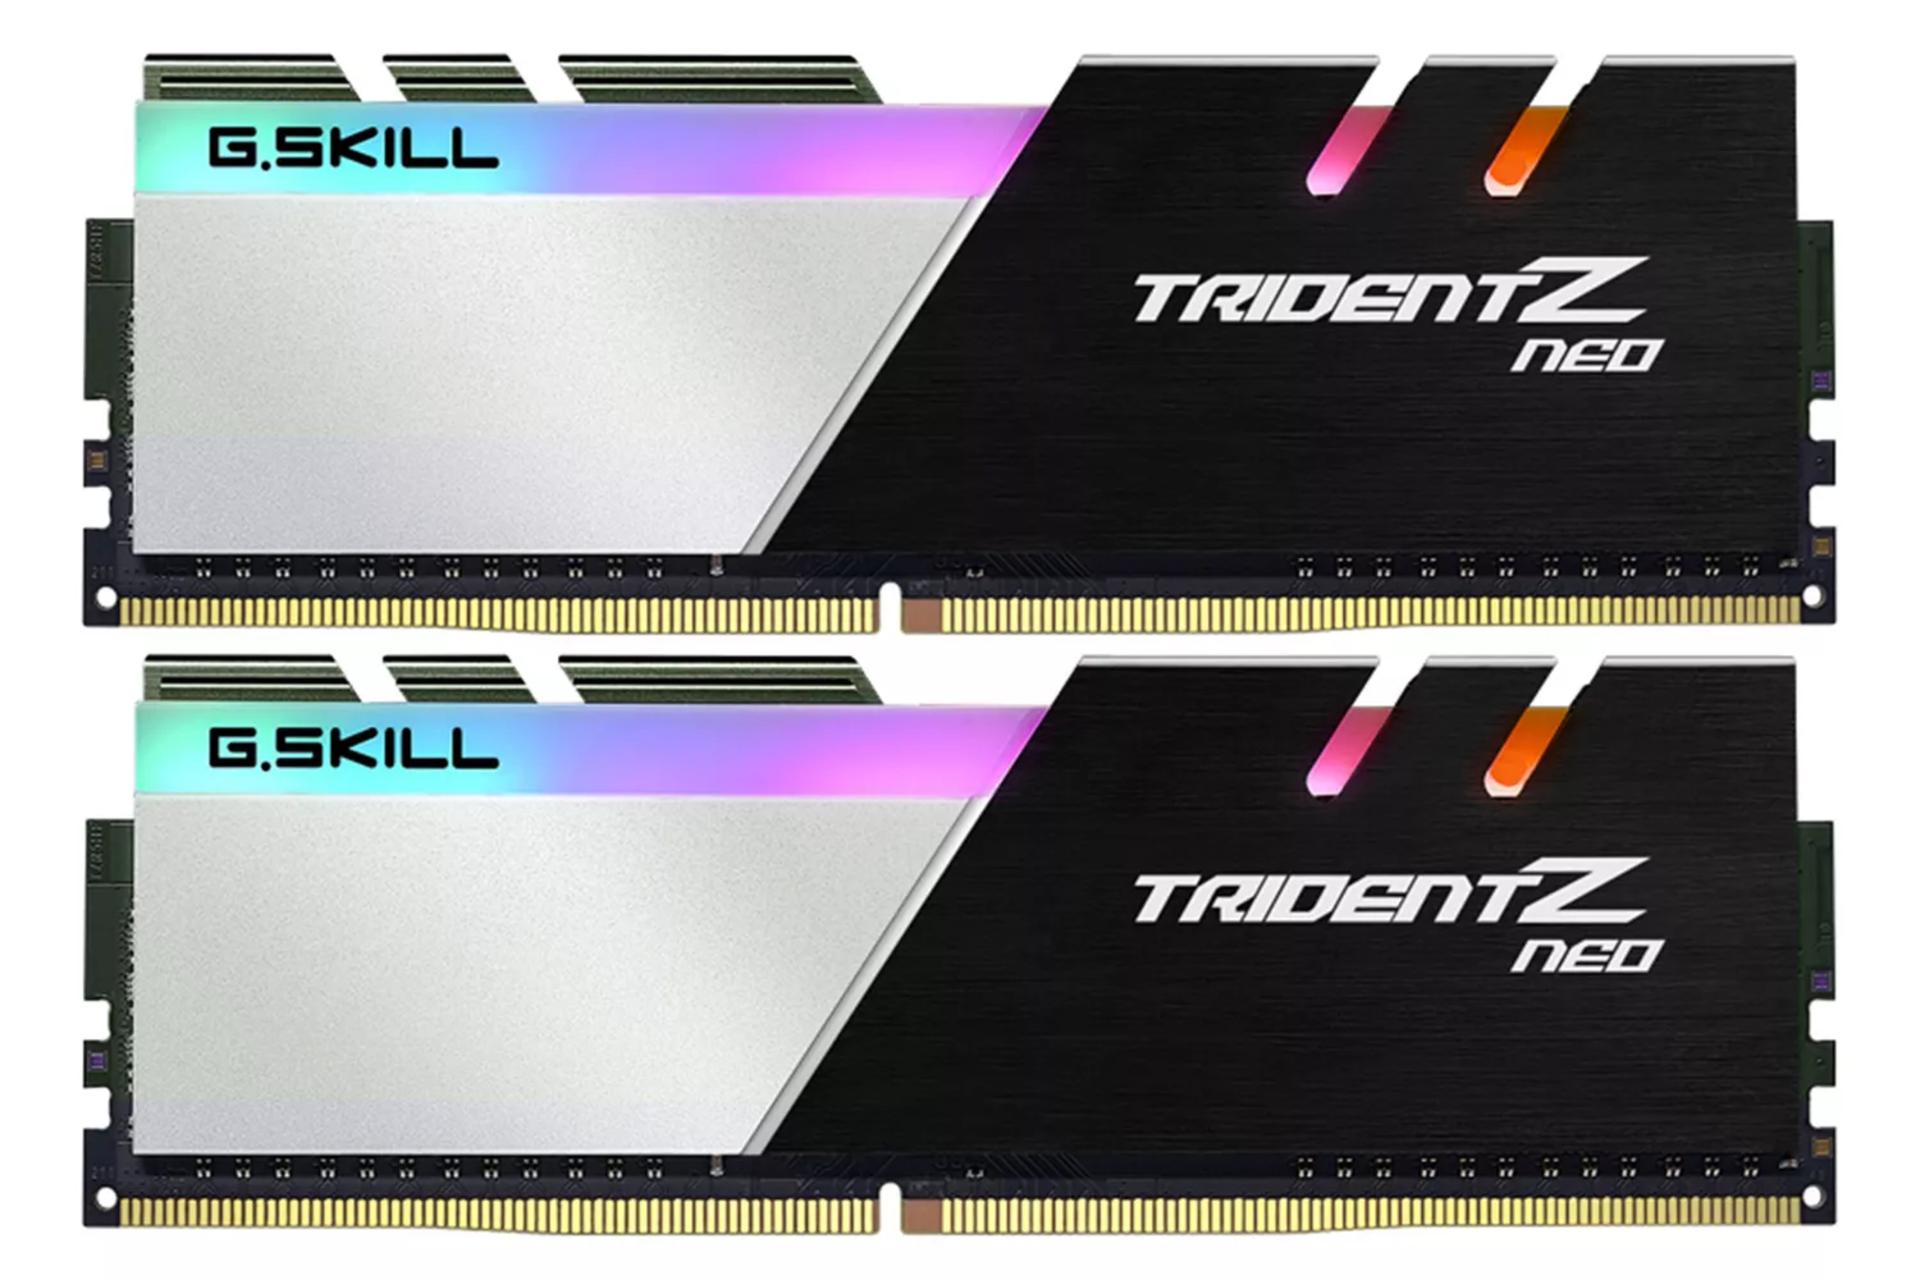 رم جی اسکیل Trident Z Neo ظرفیت 32 گیگابایت (2x16) از نوع DDR4-3200